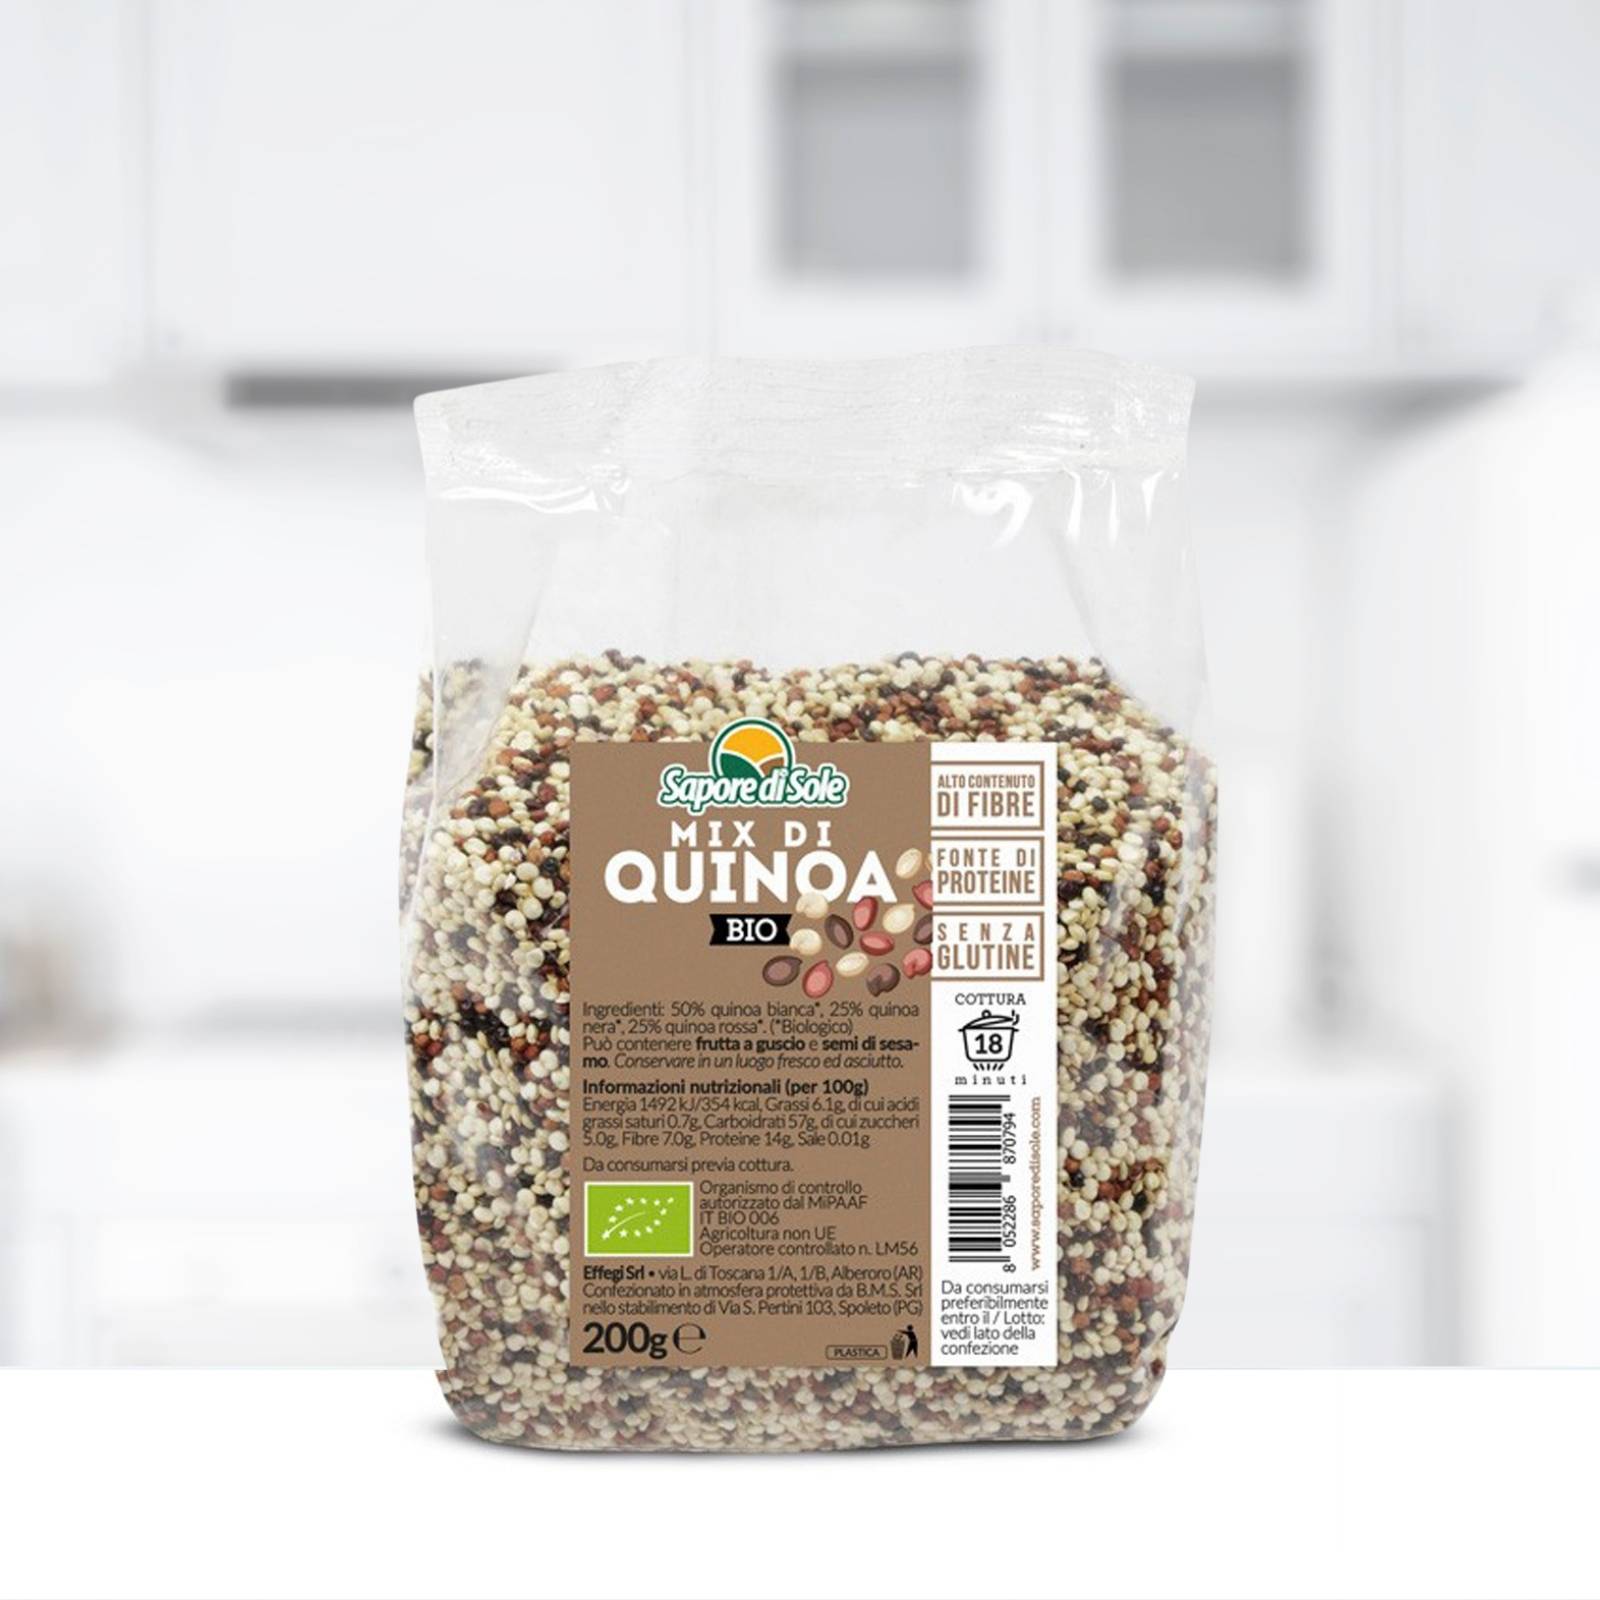 Sapore di Sole Mix di quinoa